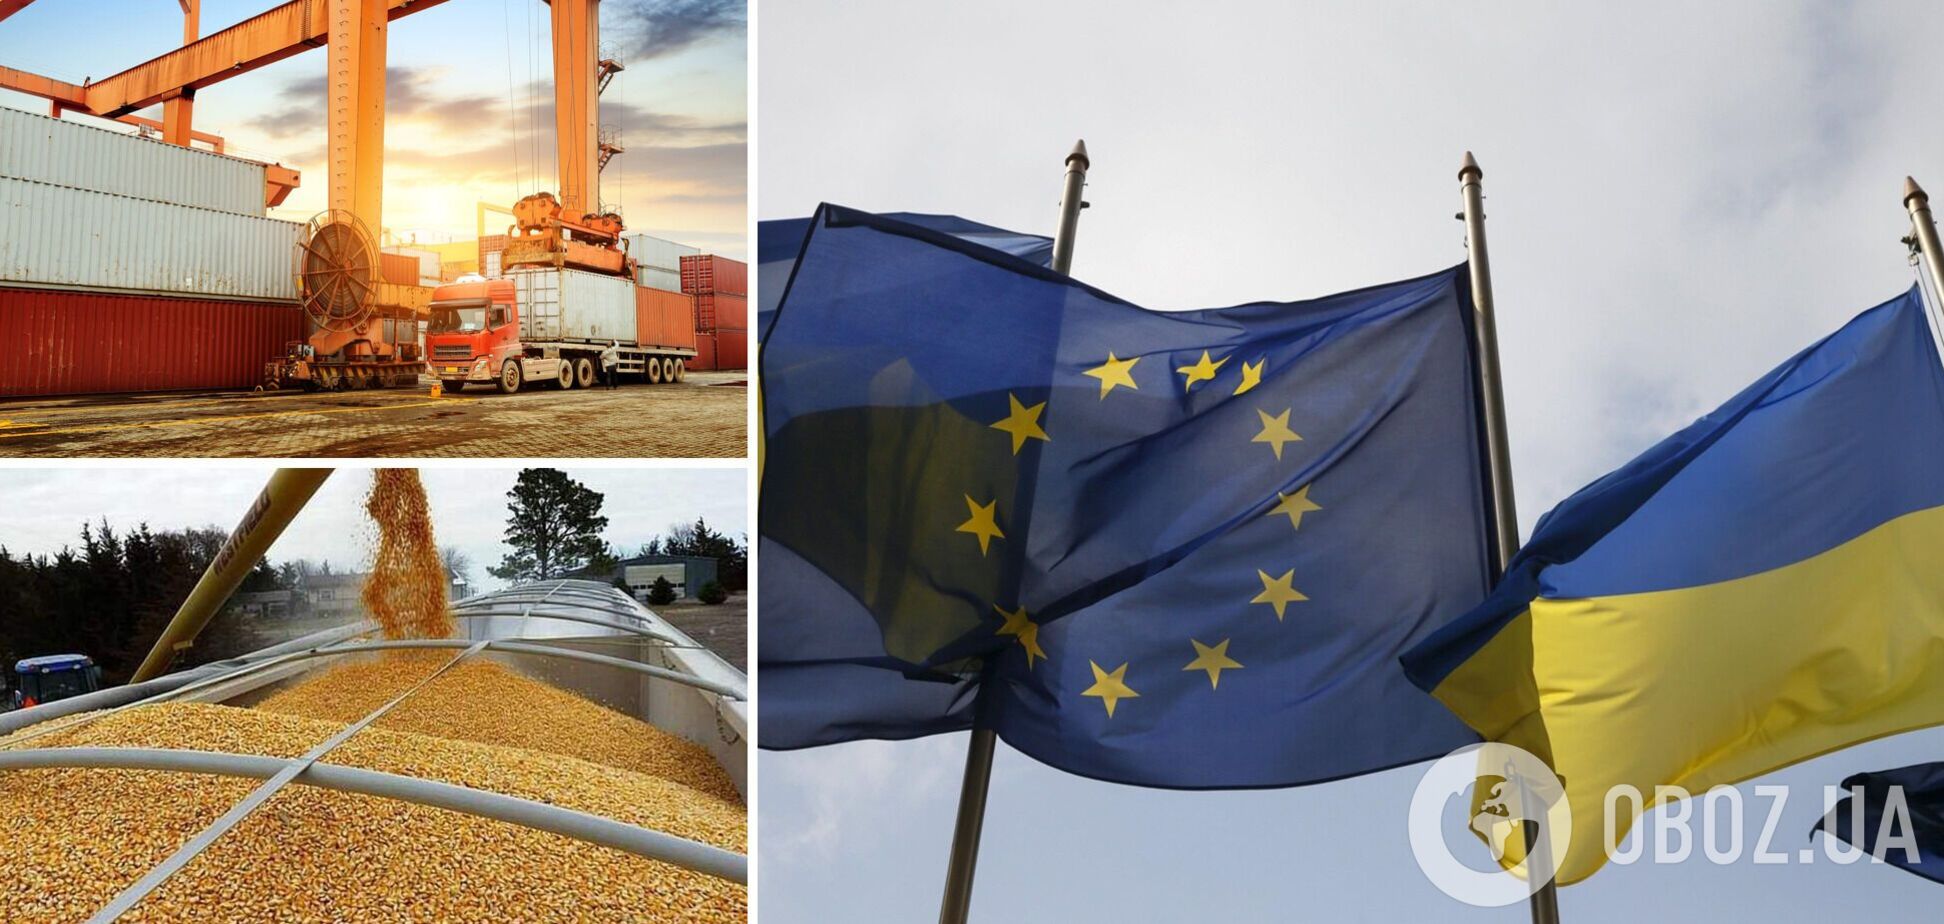 ЕС завершает разработку плана по сухопутному экспорту украинского продовольствия